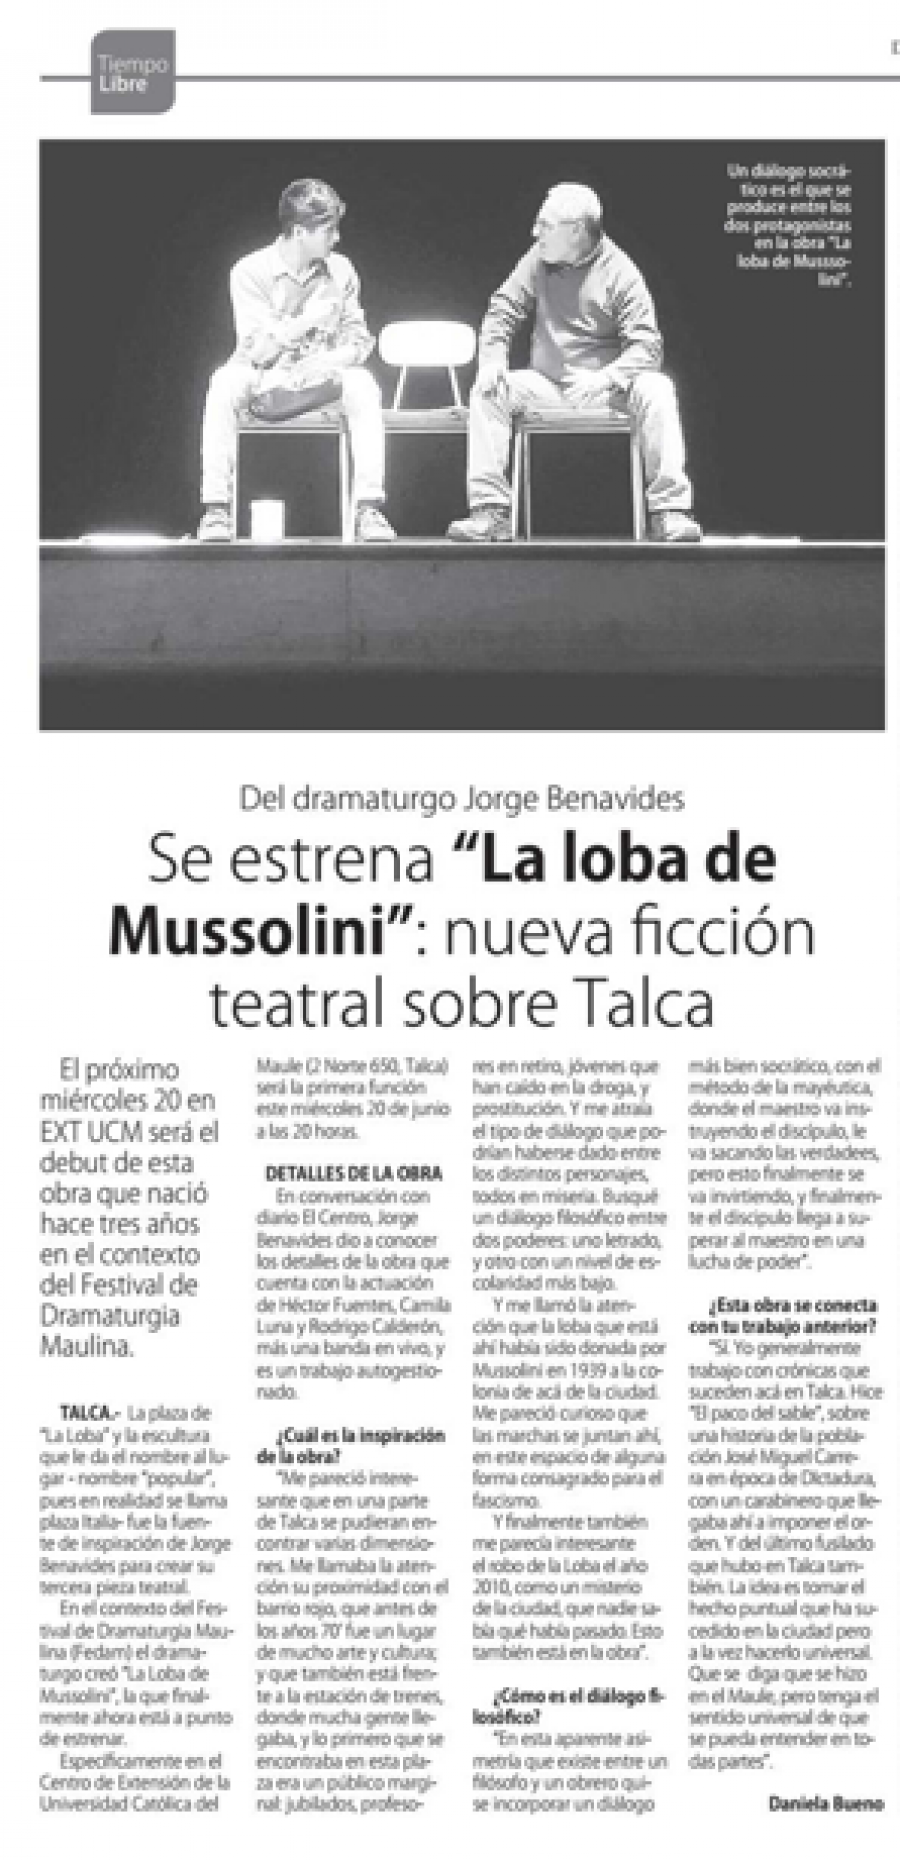 17 de junio en Diario El Centro: “Se estrena “La loba de Mussolini”: nueva ficción teatral sobre Talca”